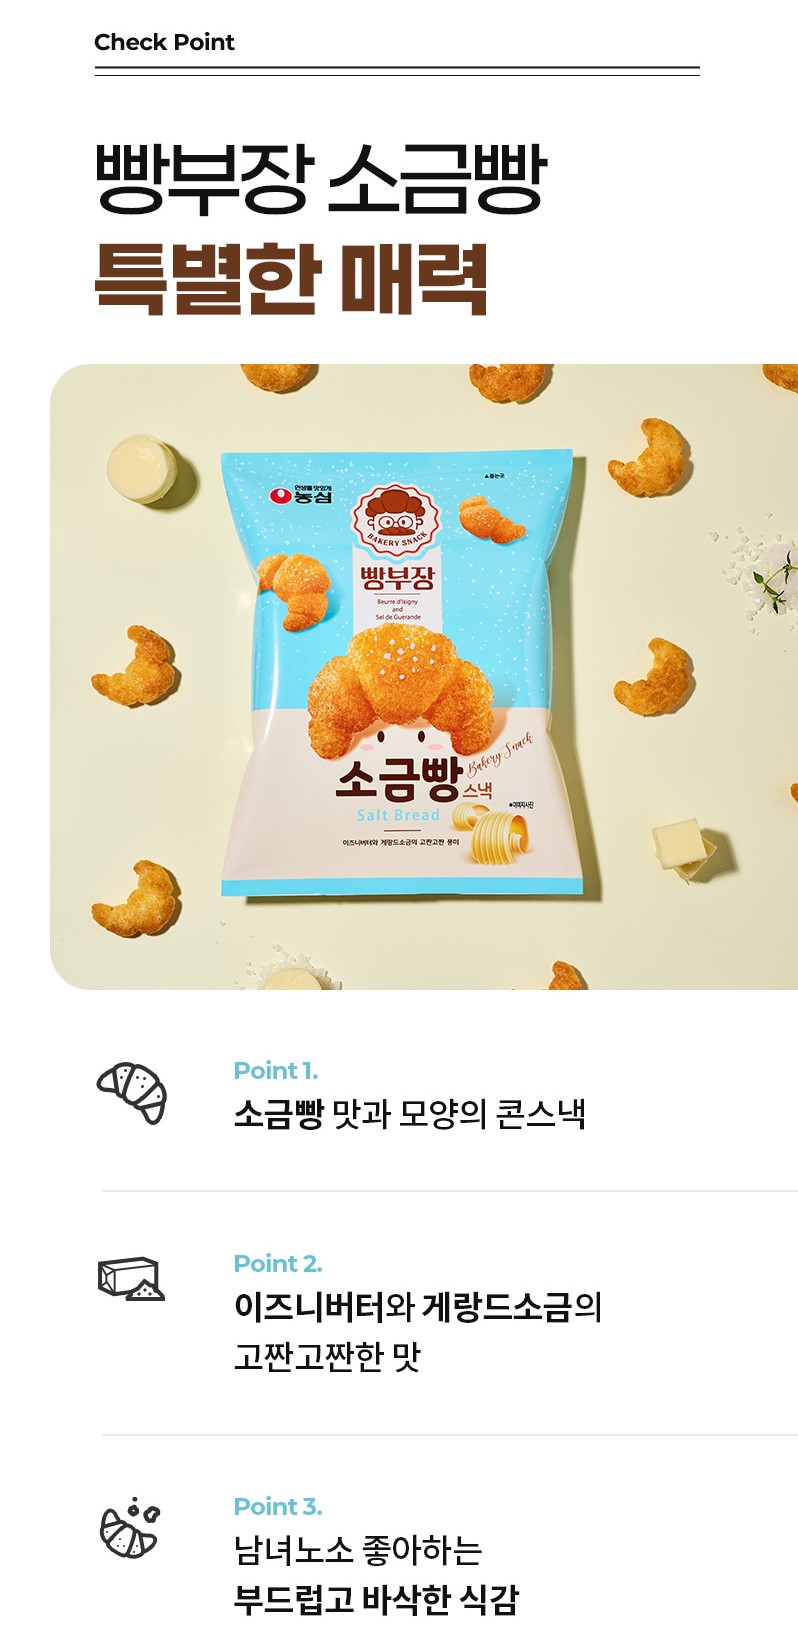 韓國食品-[農心] 鹽麵包零食 55g